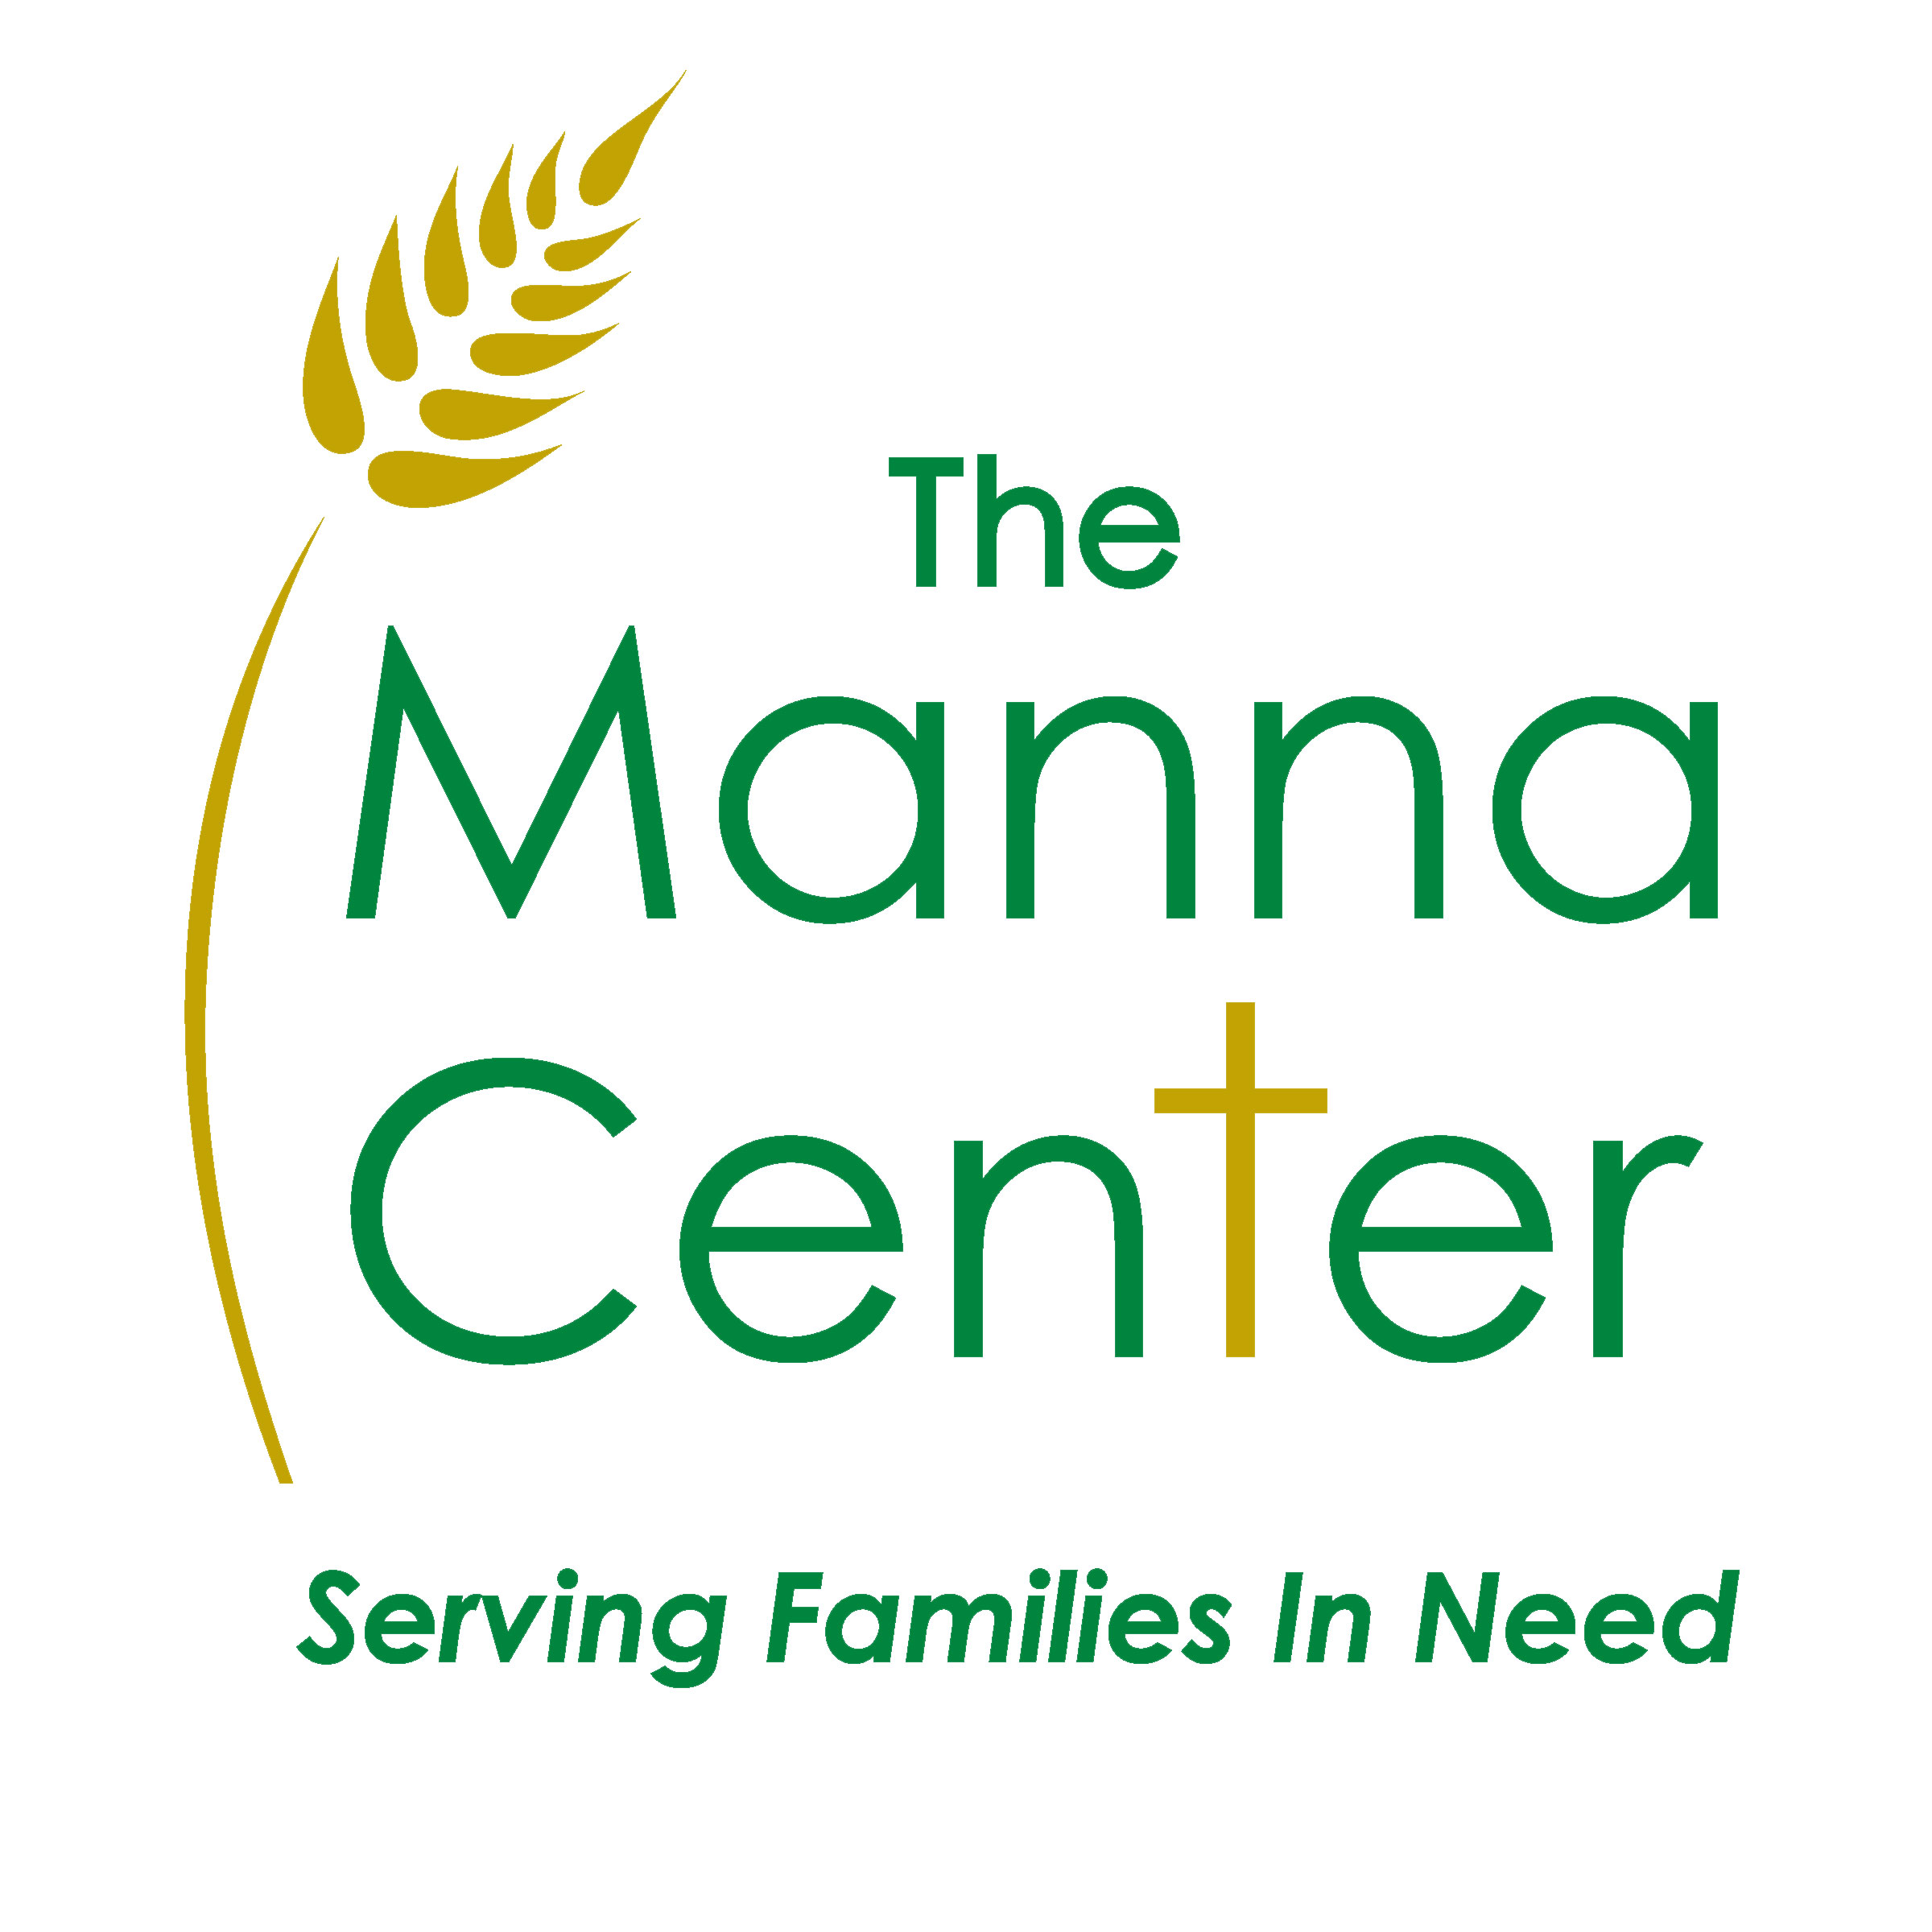 Manna Center